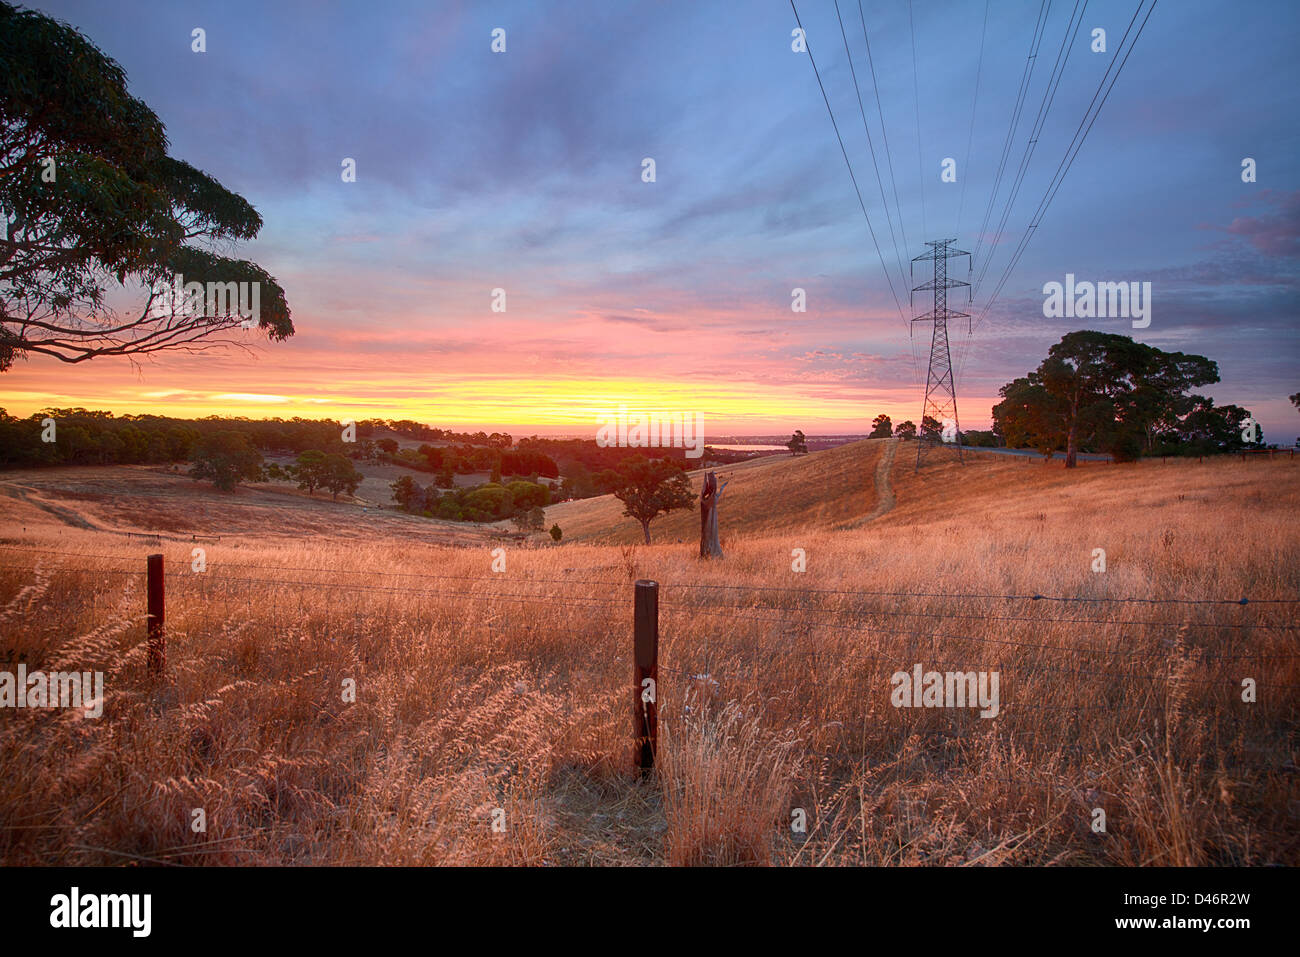 Une cour de ferme à sec au coucher du soleil près d'Adélaïde, la capitale de l'Australie du Sud touchés par la sécheresse Banque D'Images